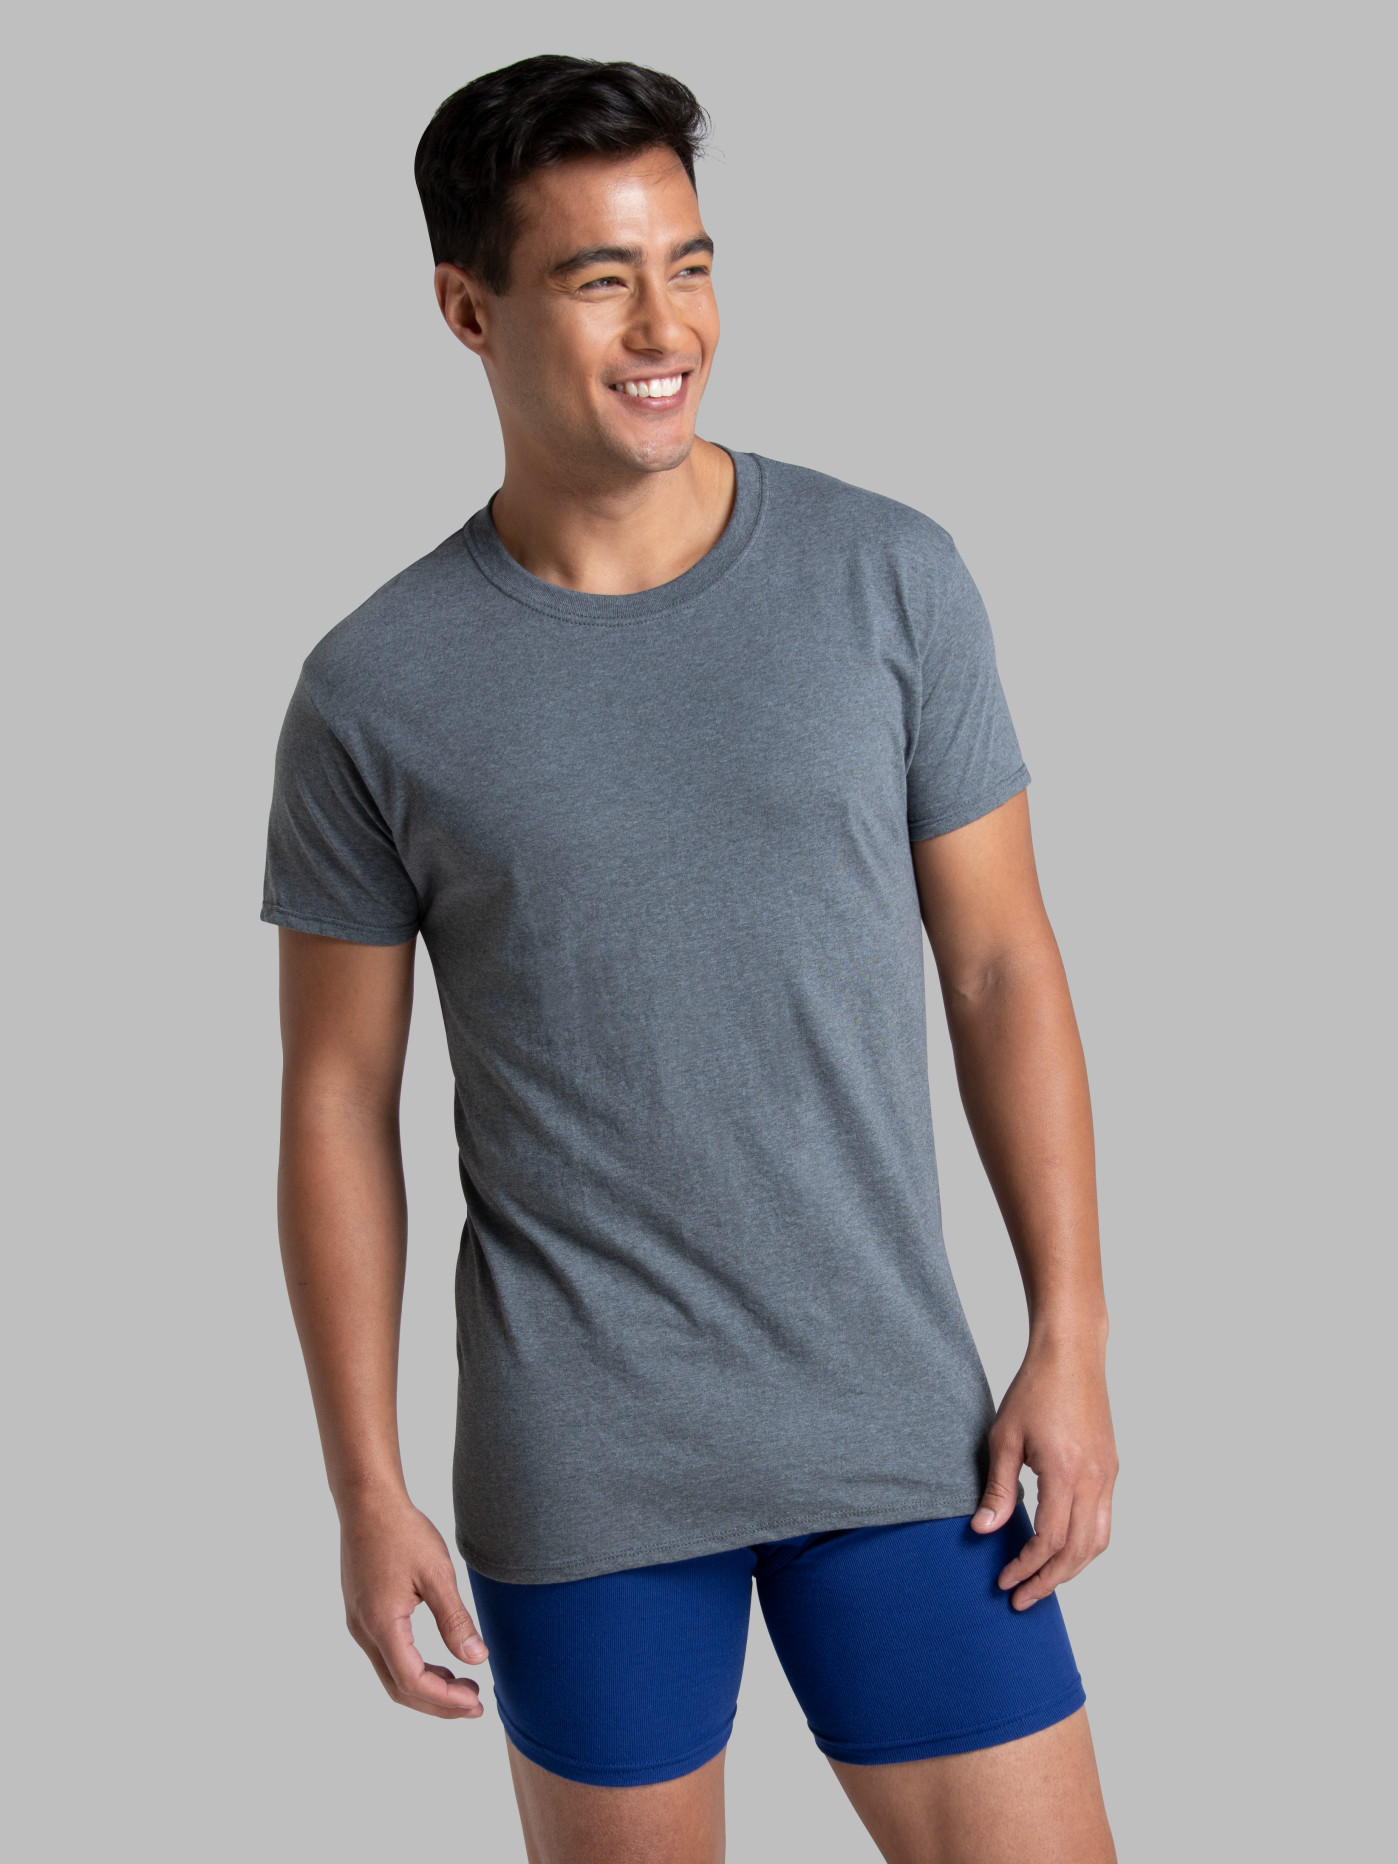 Full sleeves t shirt grey  Full hand tshirt for men & women – Muselot